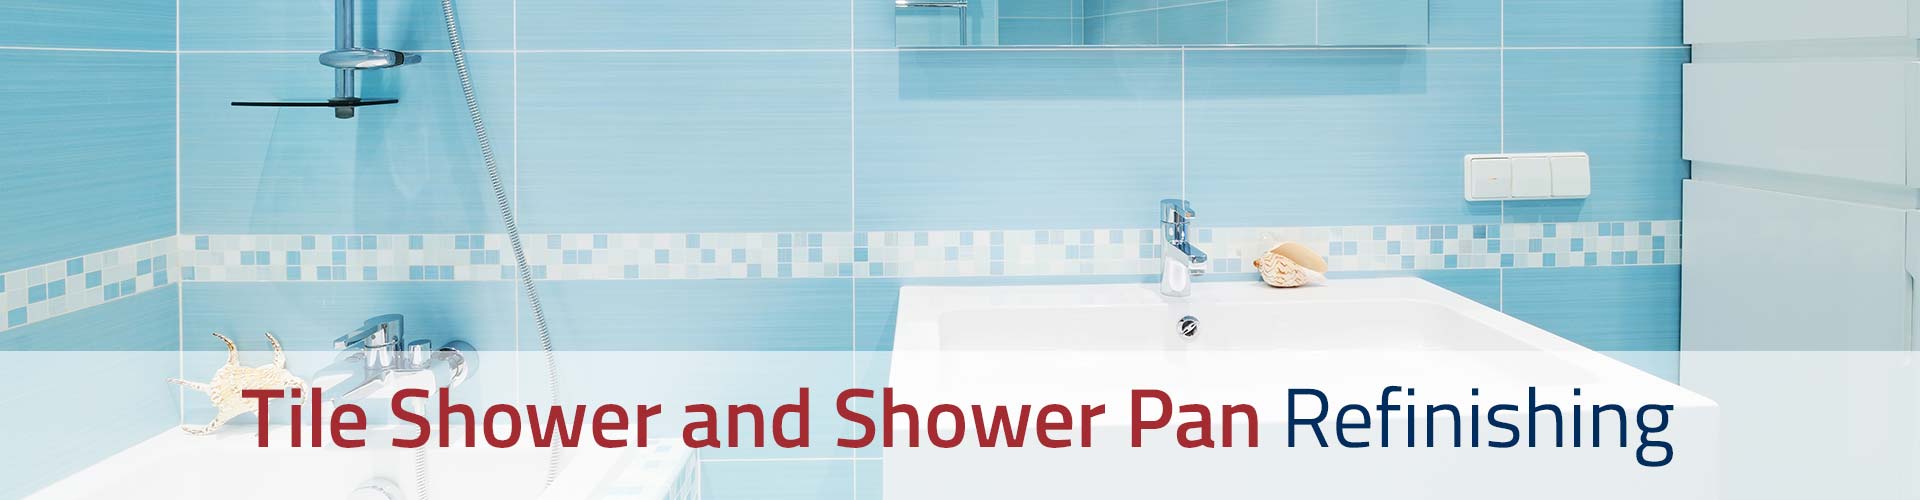 Tile Shower & Shower Pan Refinishing